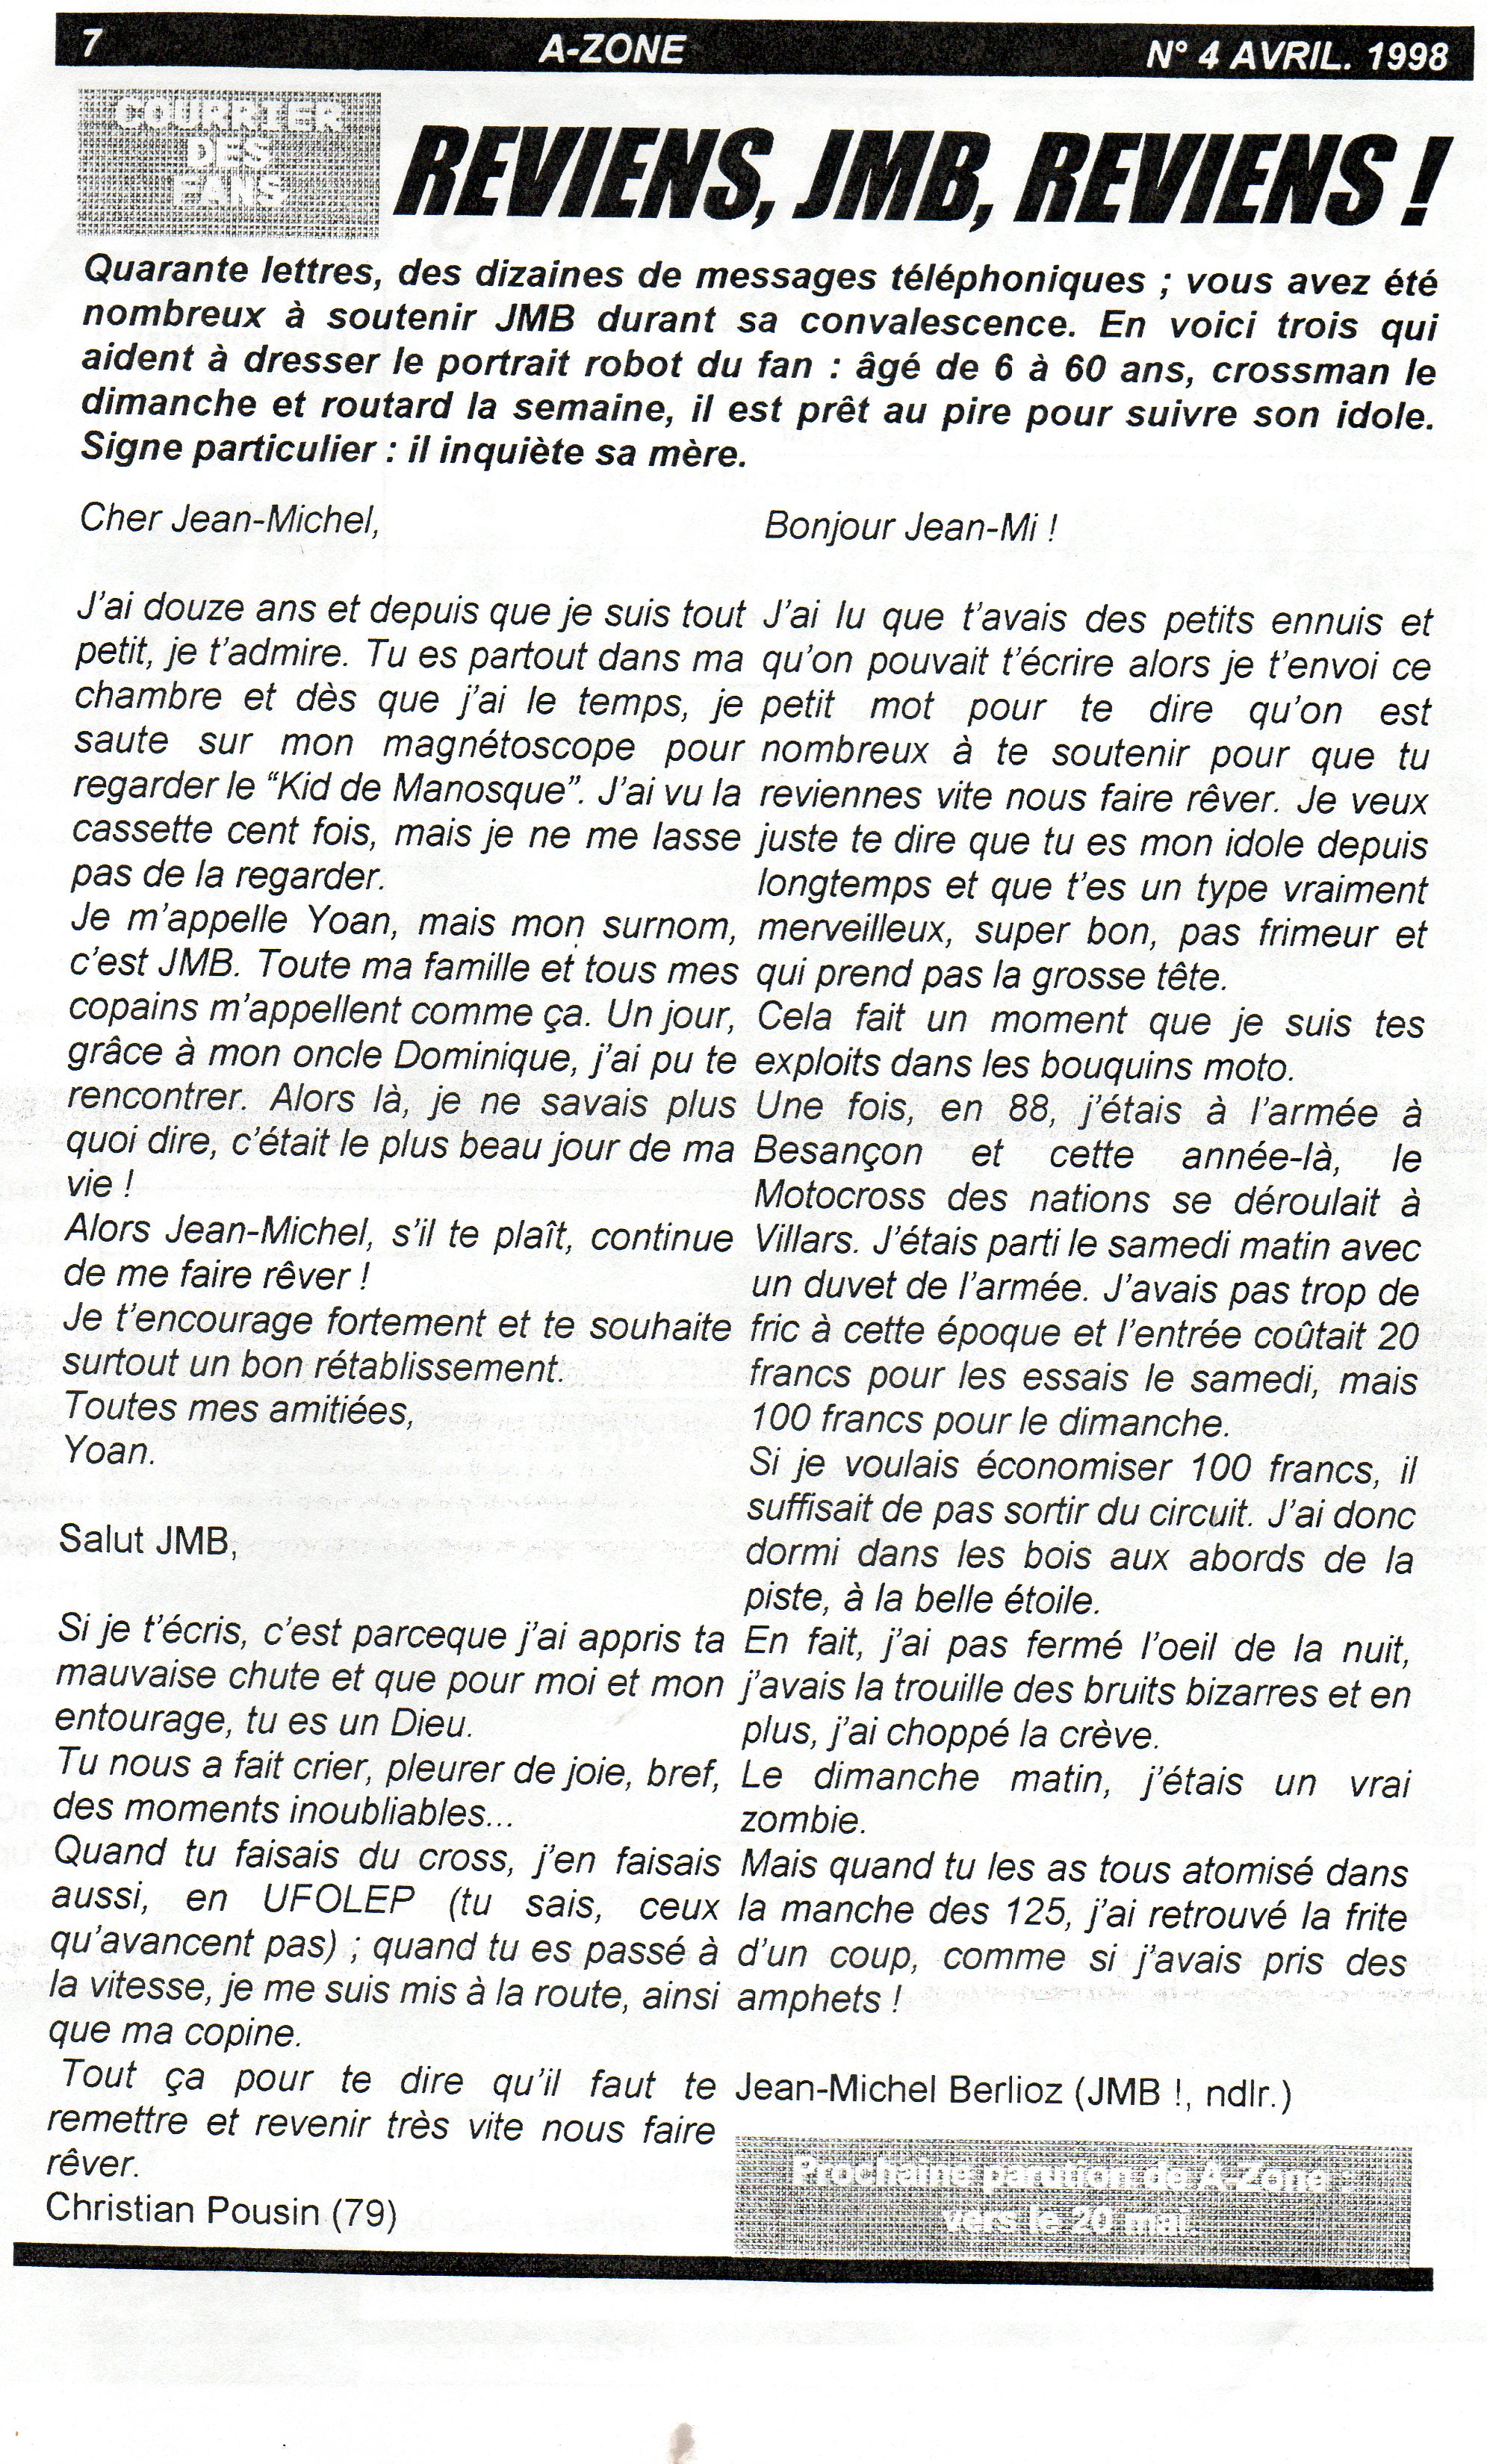 La page 7 du numéro d'AVril 1998 d'A Zone